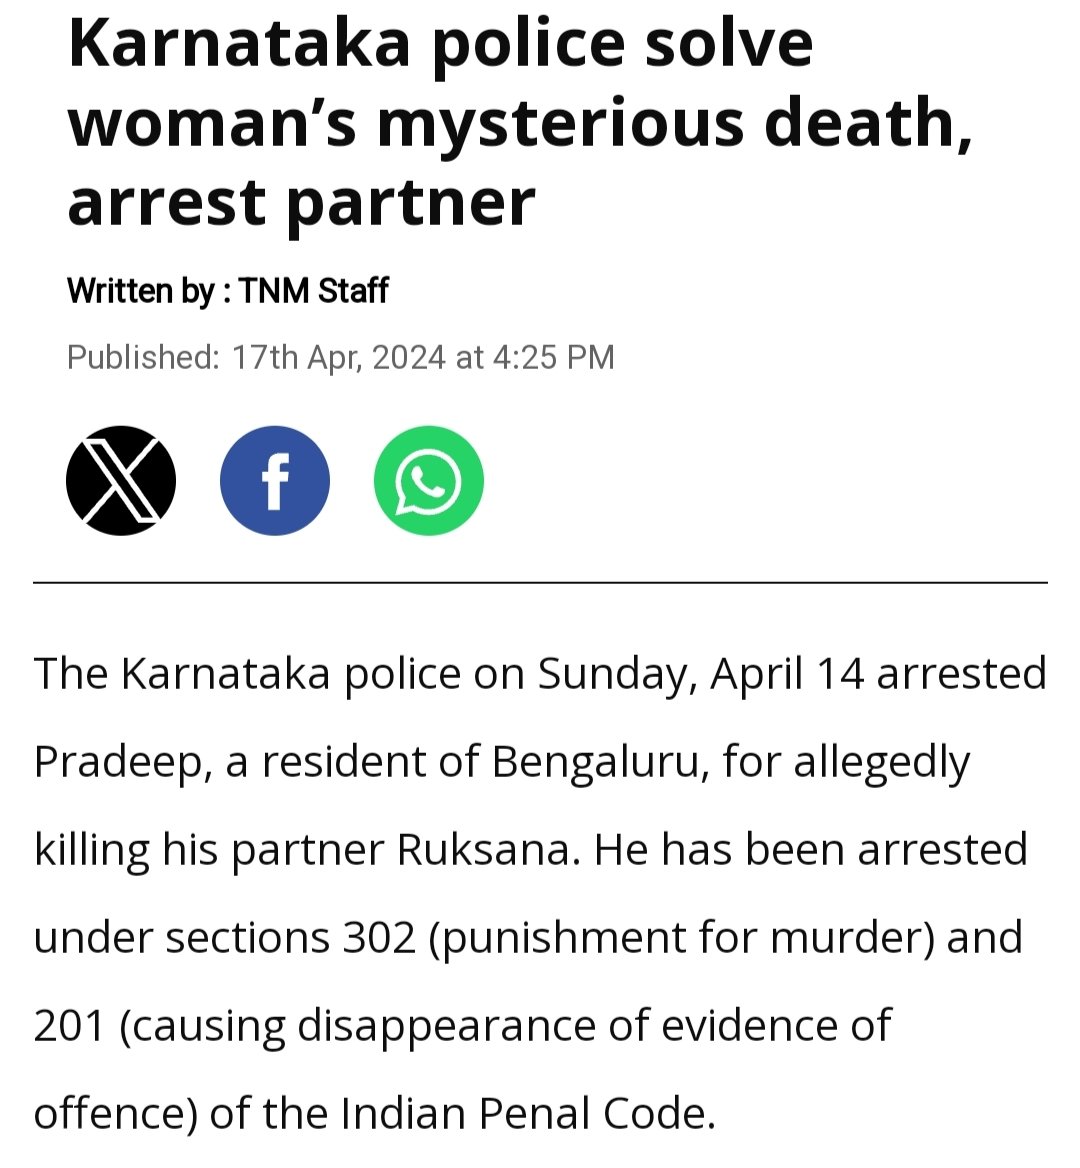 फैयाज को फांसी होनी चाहिए लेकिन कर्नाटक में एक और हत्या हुई है, रुखसाना की, उस पर आप लोग चुप क्यों हैं?